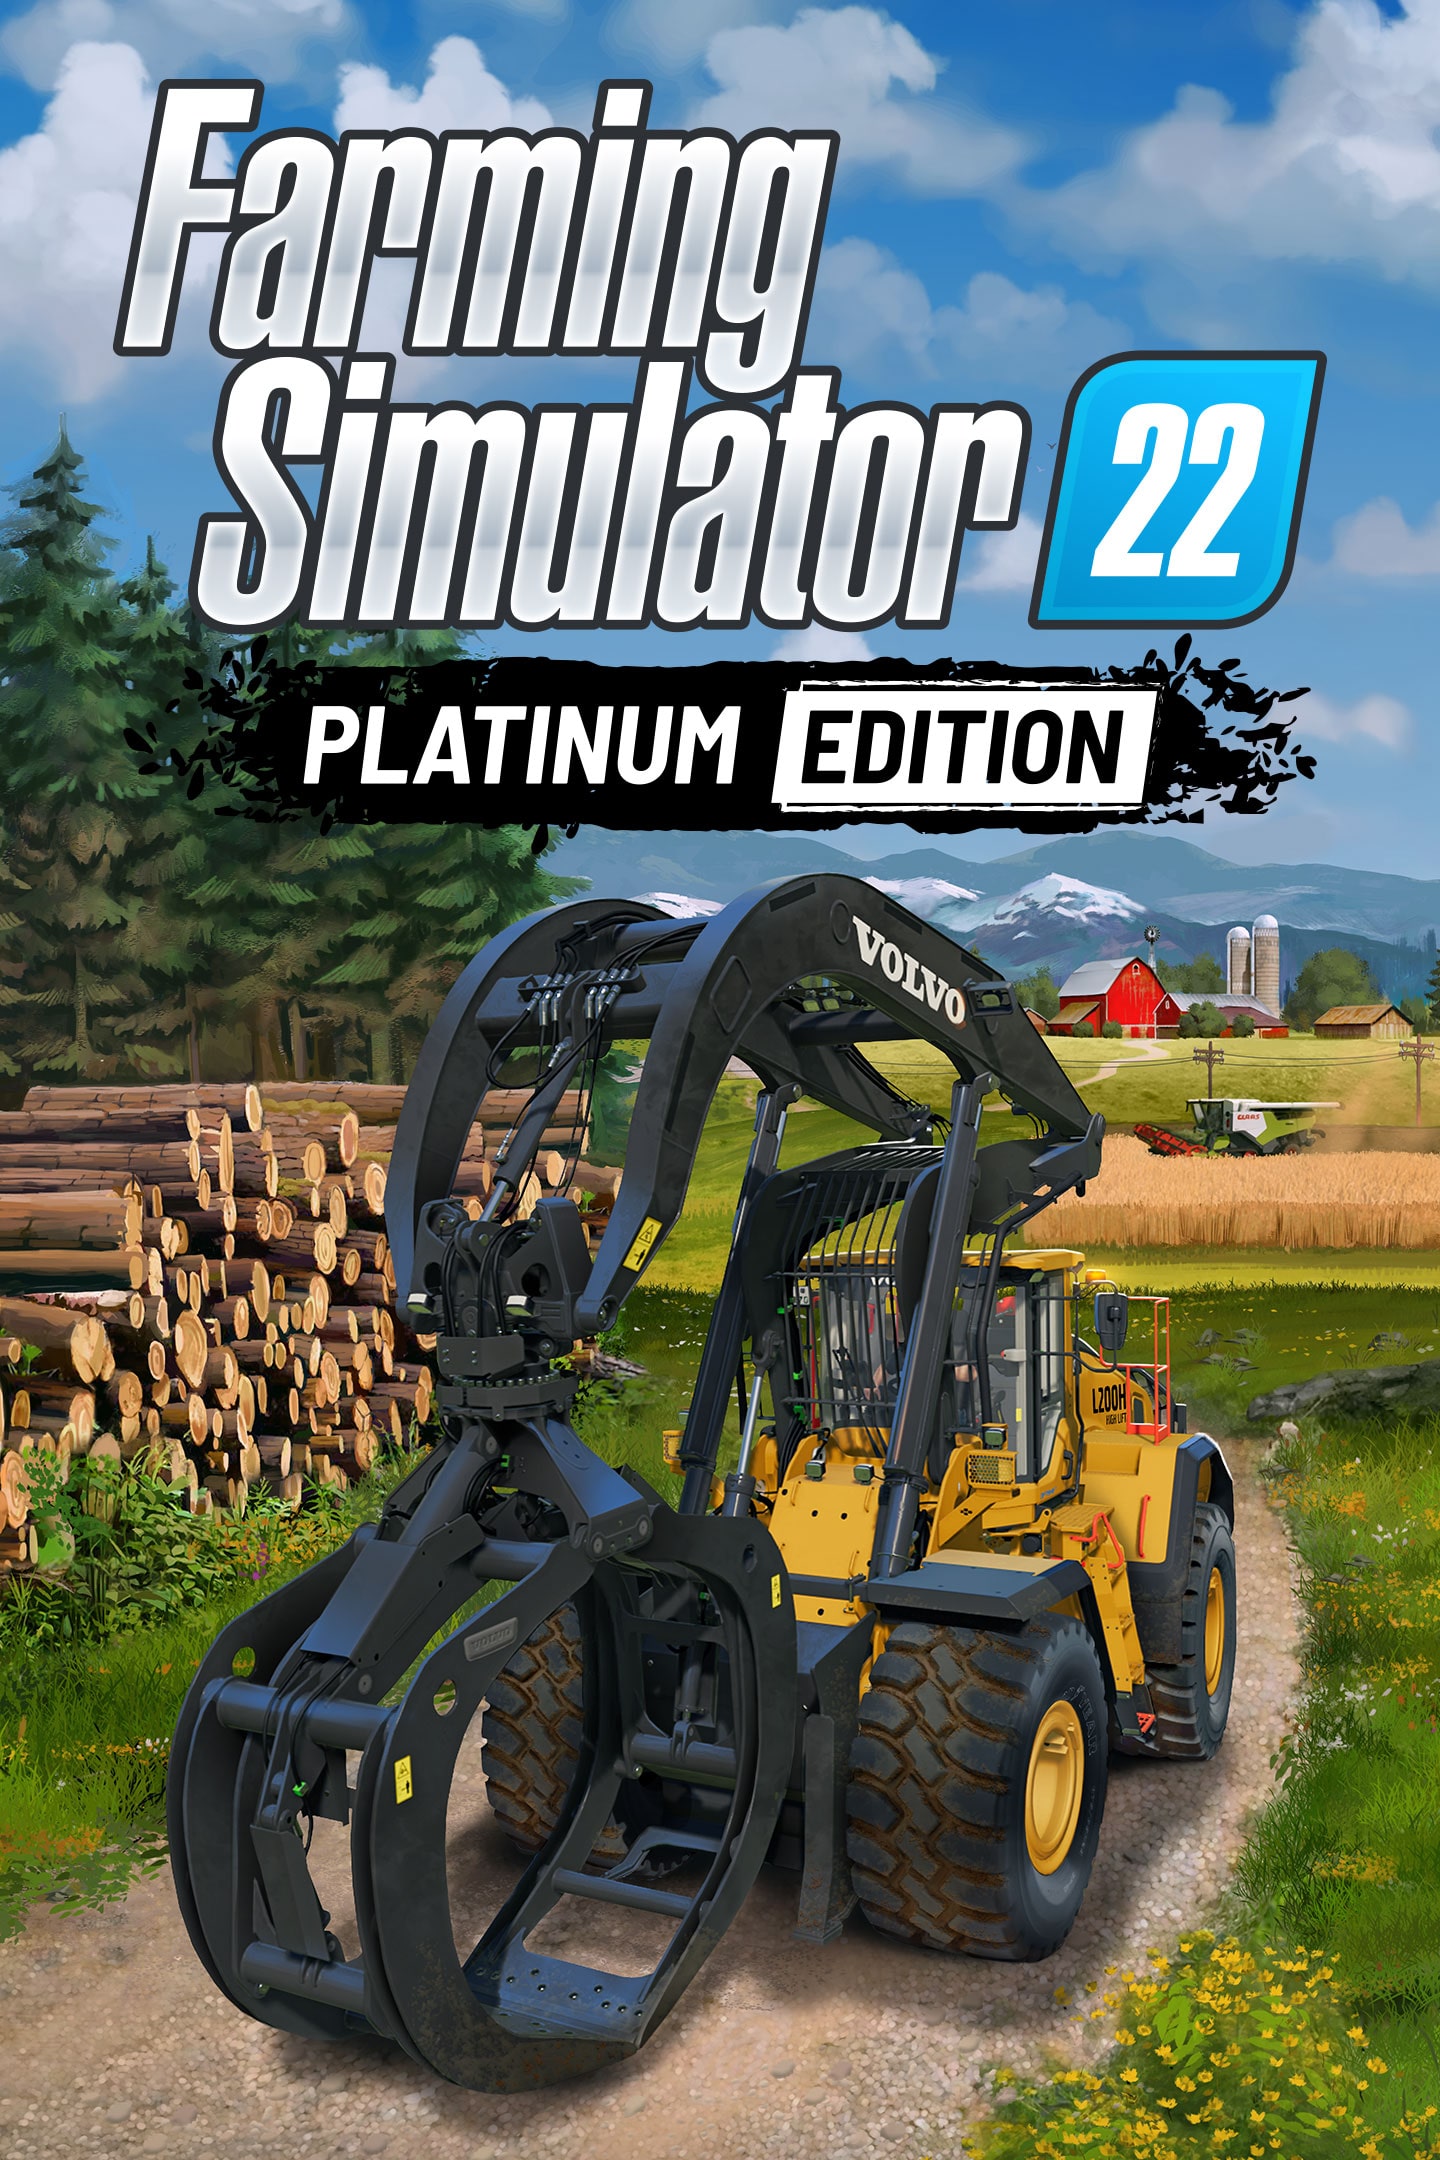 Game Farming Simulator 2022 - PS4 em Promoção na Americanas